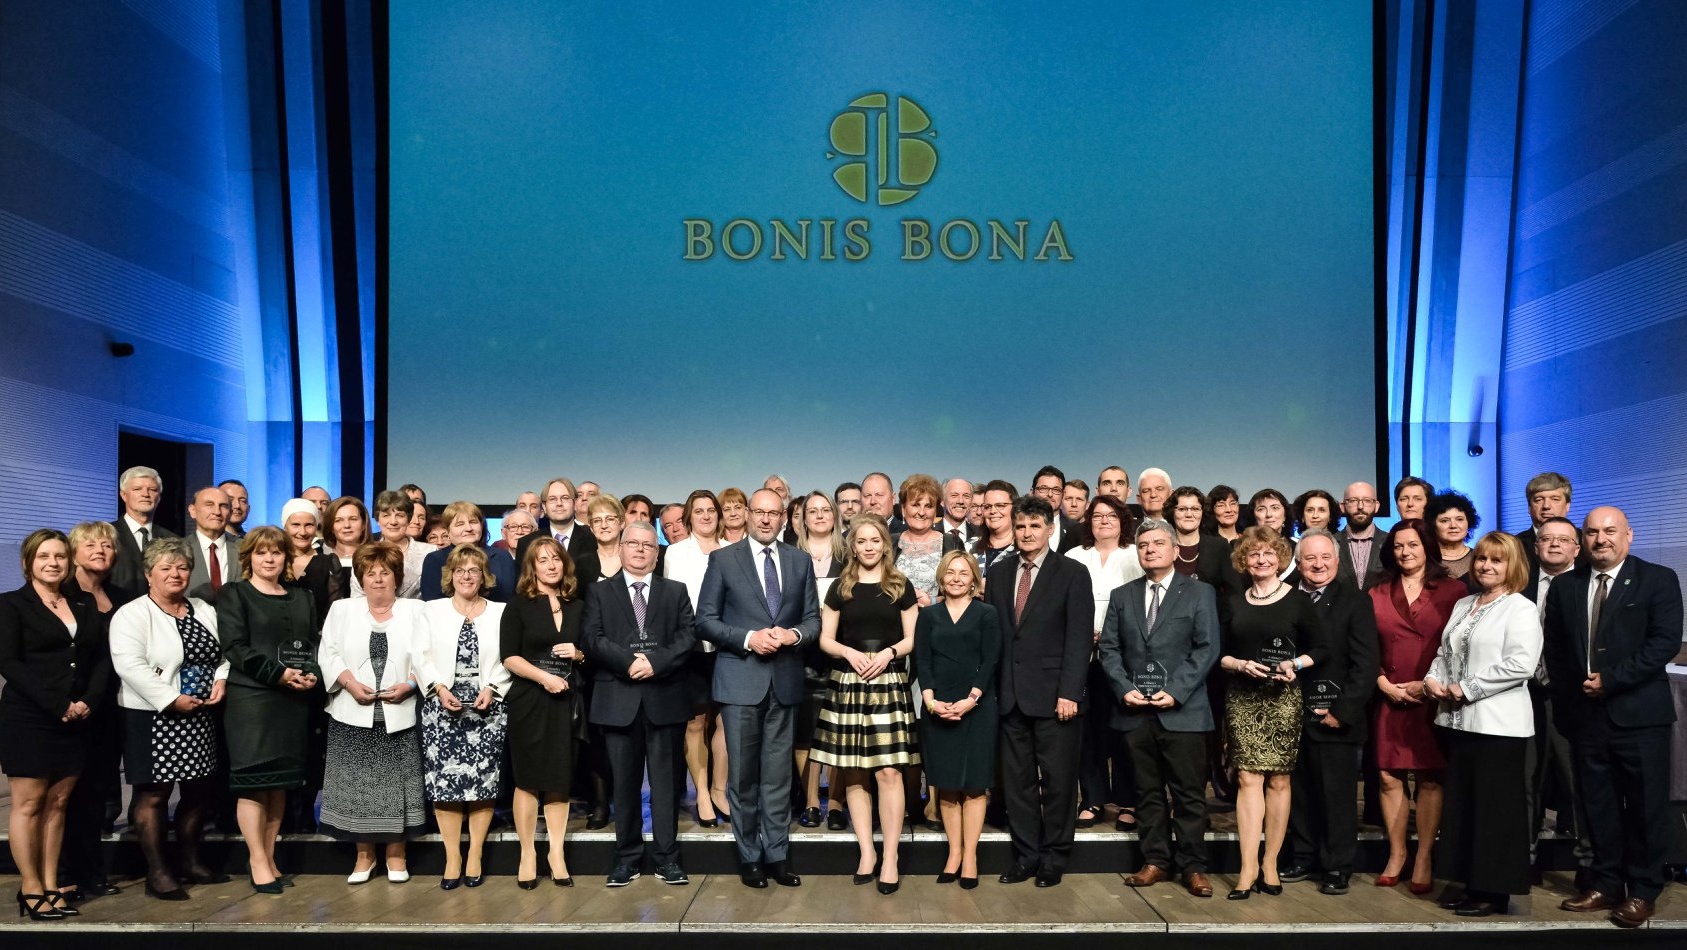 Átadták a legrangosabb tehetségsegítői díjakat: a Bonis Bona – A nemzet tehetségeiért elismeréseket